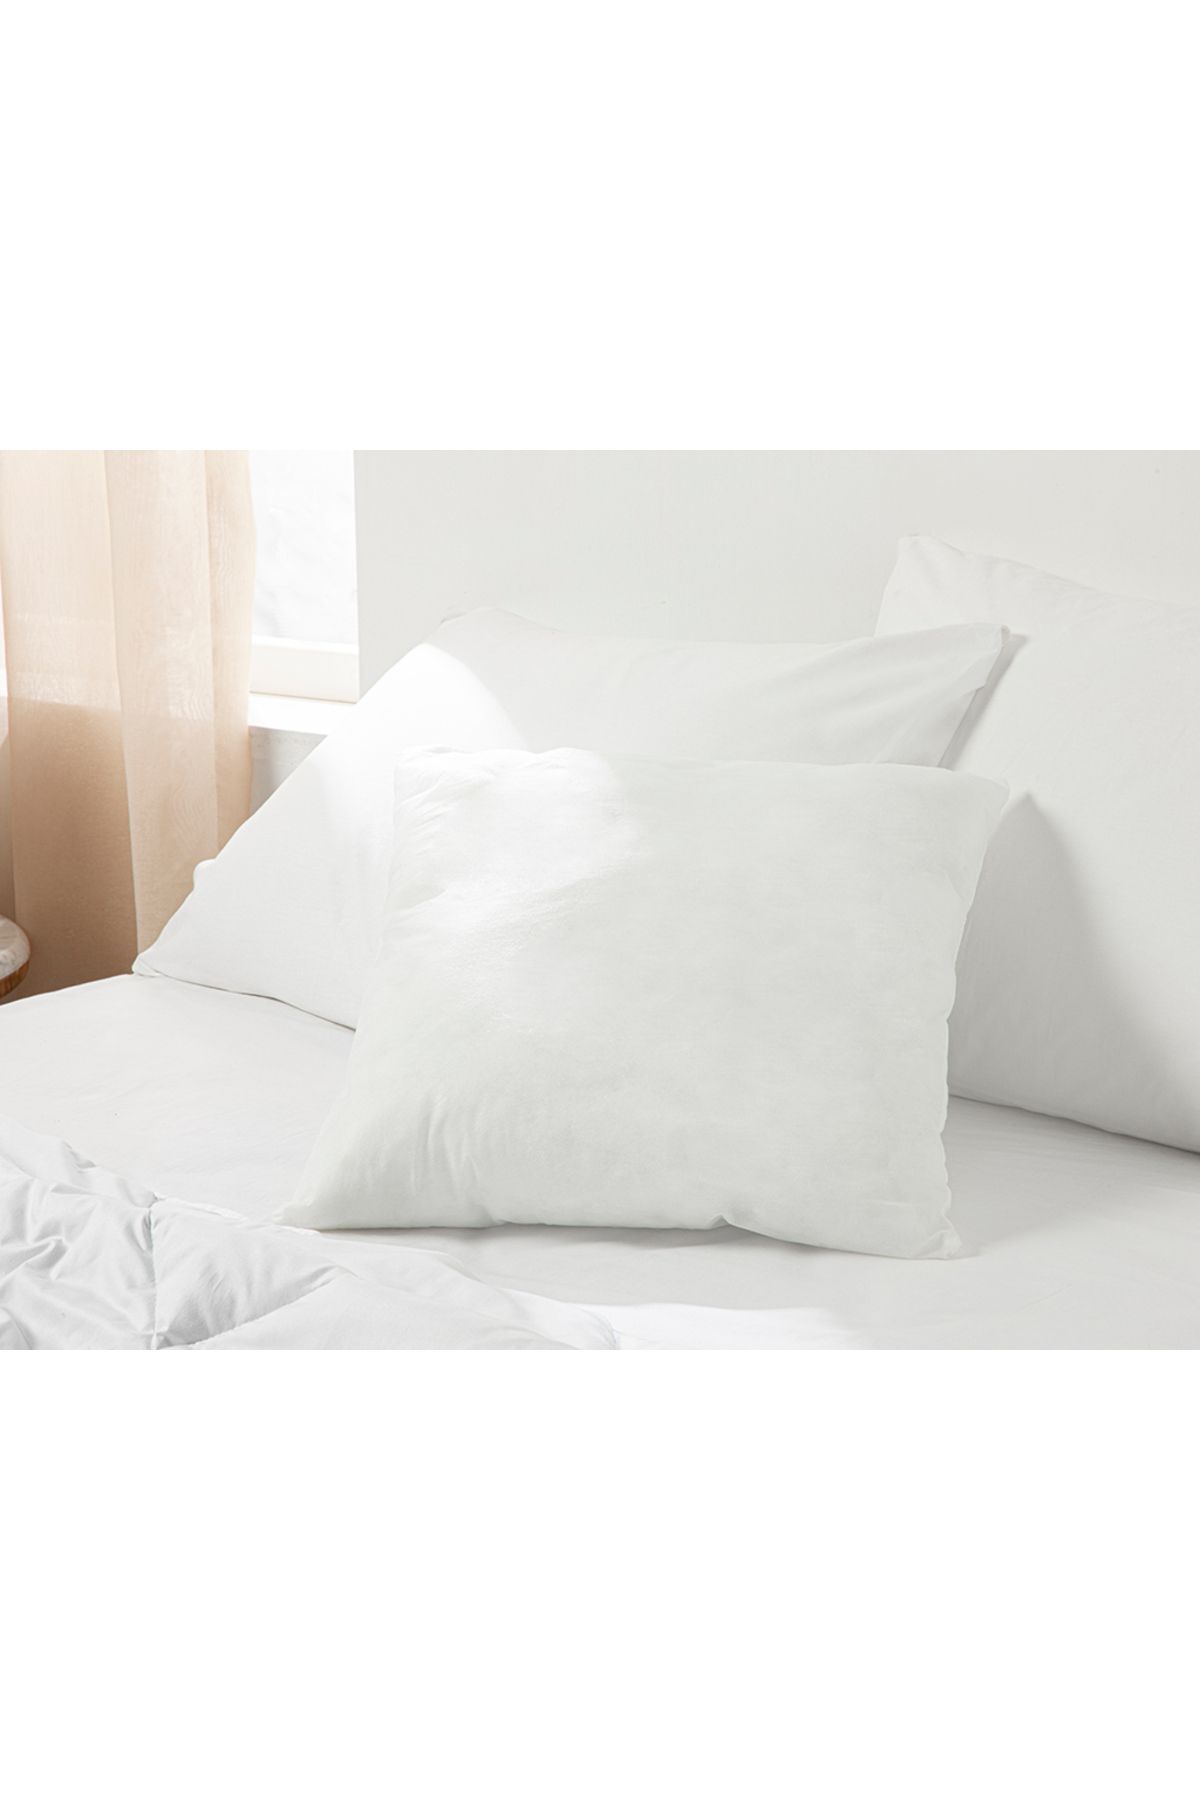 English Home Silikonlu Kırlent Kılıfı Yastığı 45x45 Cm Beyaz